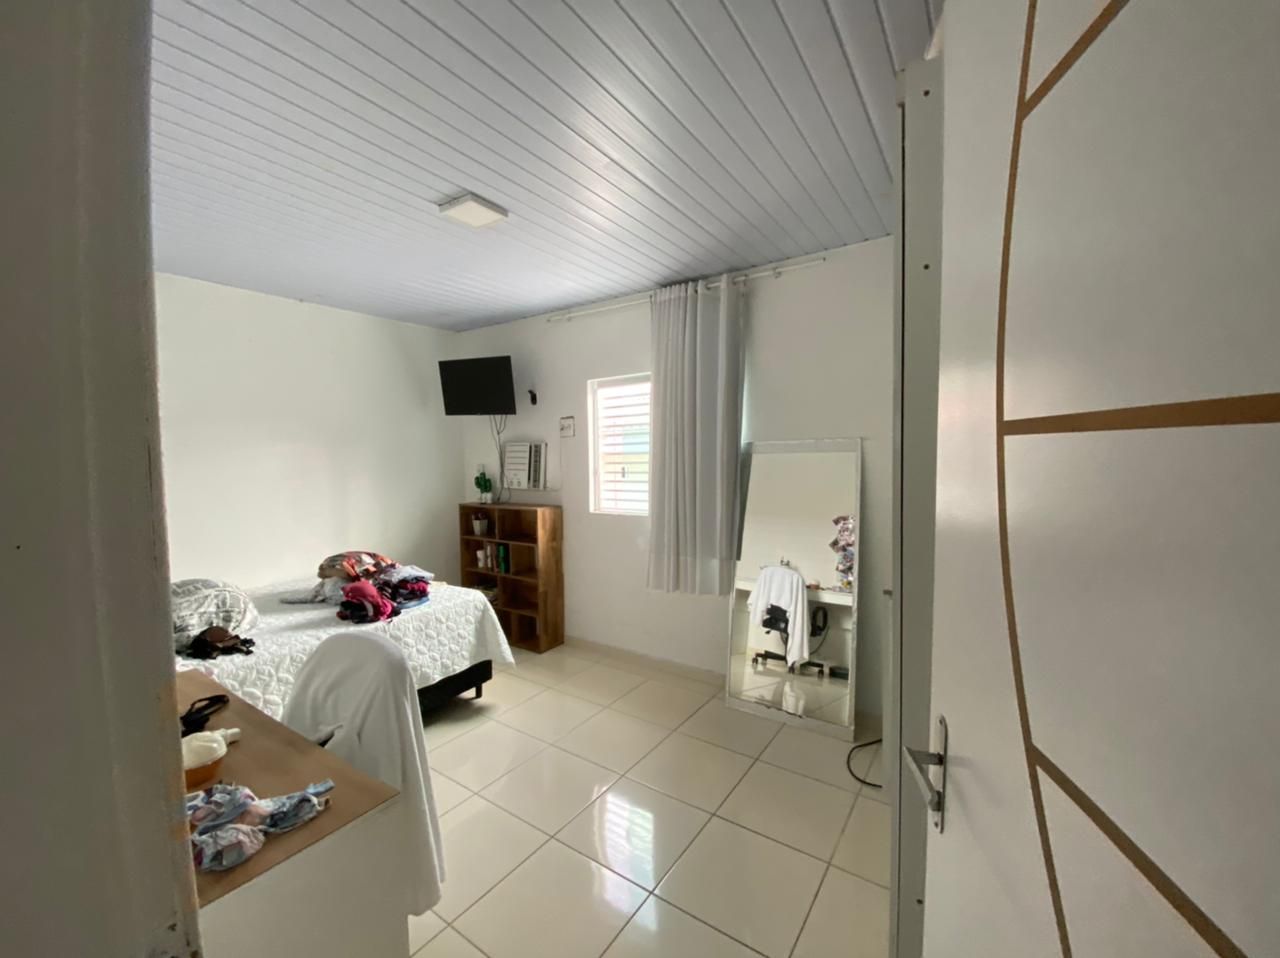 Casa com 3 dormitórios à venda, 100 m² por RS 350.000 - Cidade Nova - Manaus-AM